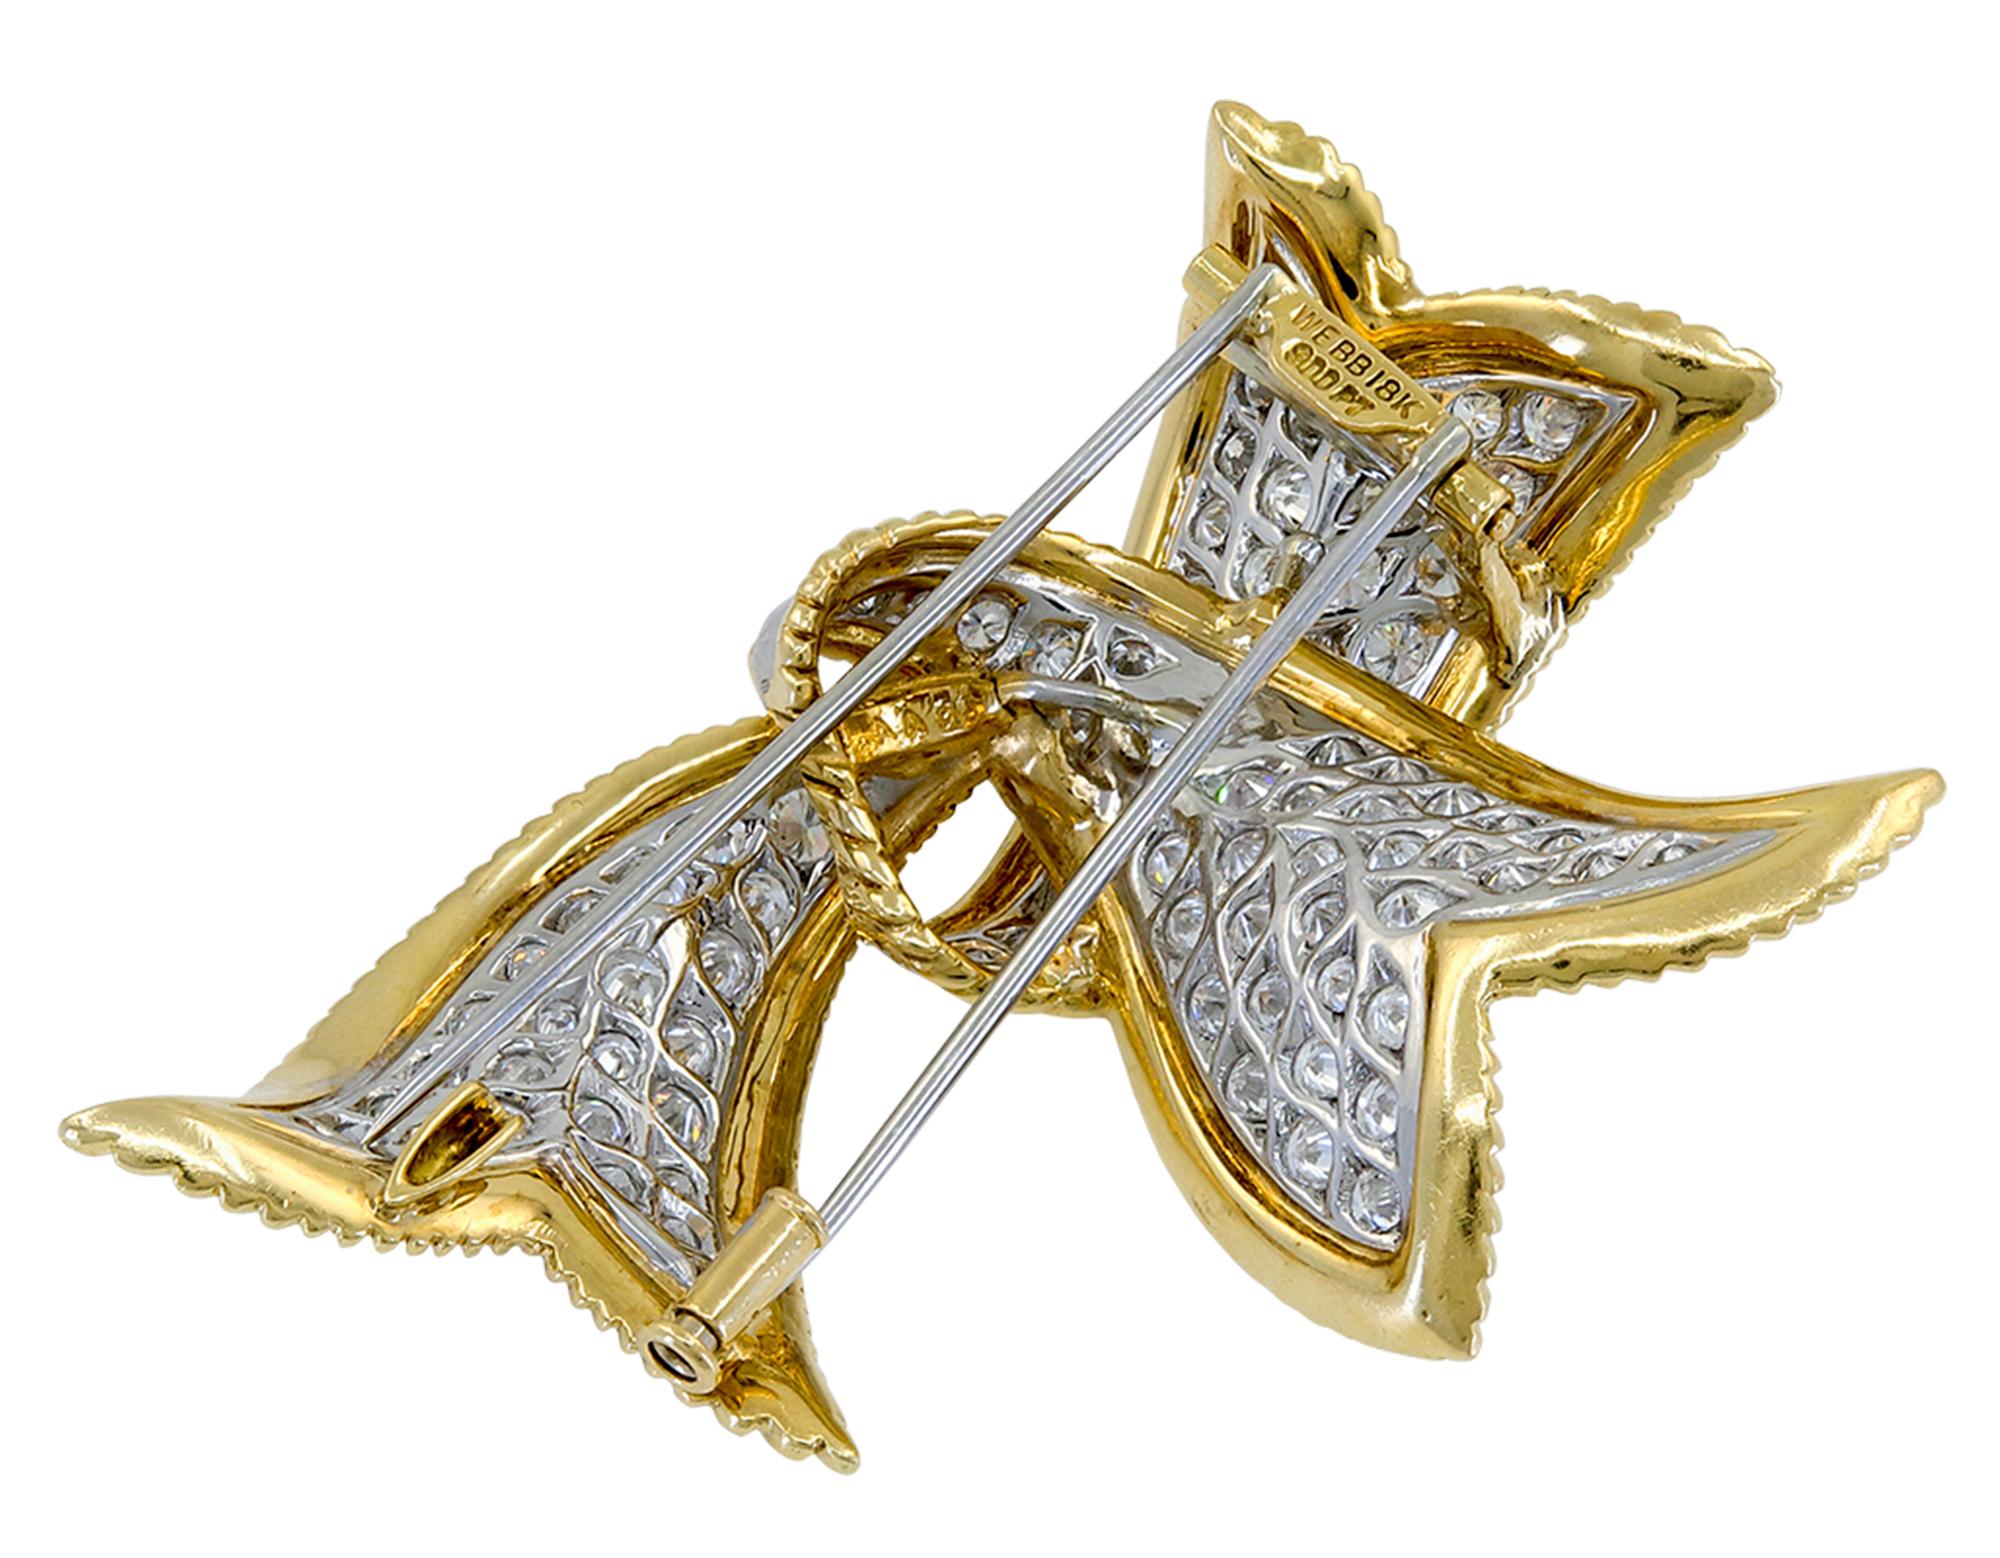 Élégante broche en forme de ruban, créée par David Webb, comprenant environ 10,67 carats de diamants taille brillant, de l'or jaune 18K texturé et du platine.
Signé David Webb.
Un certificat d'authenticité est fourni.